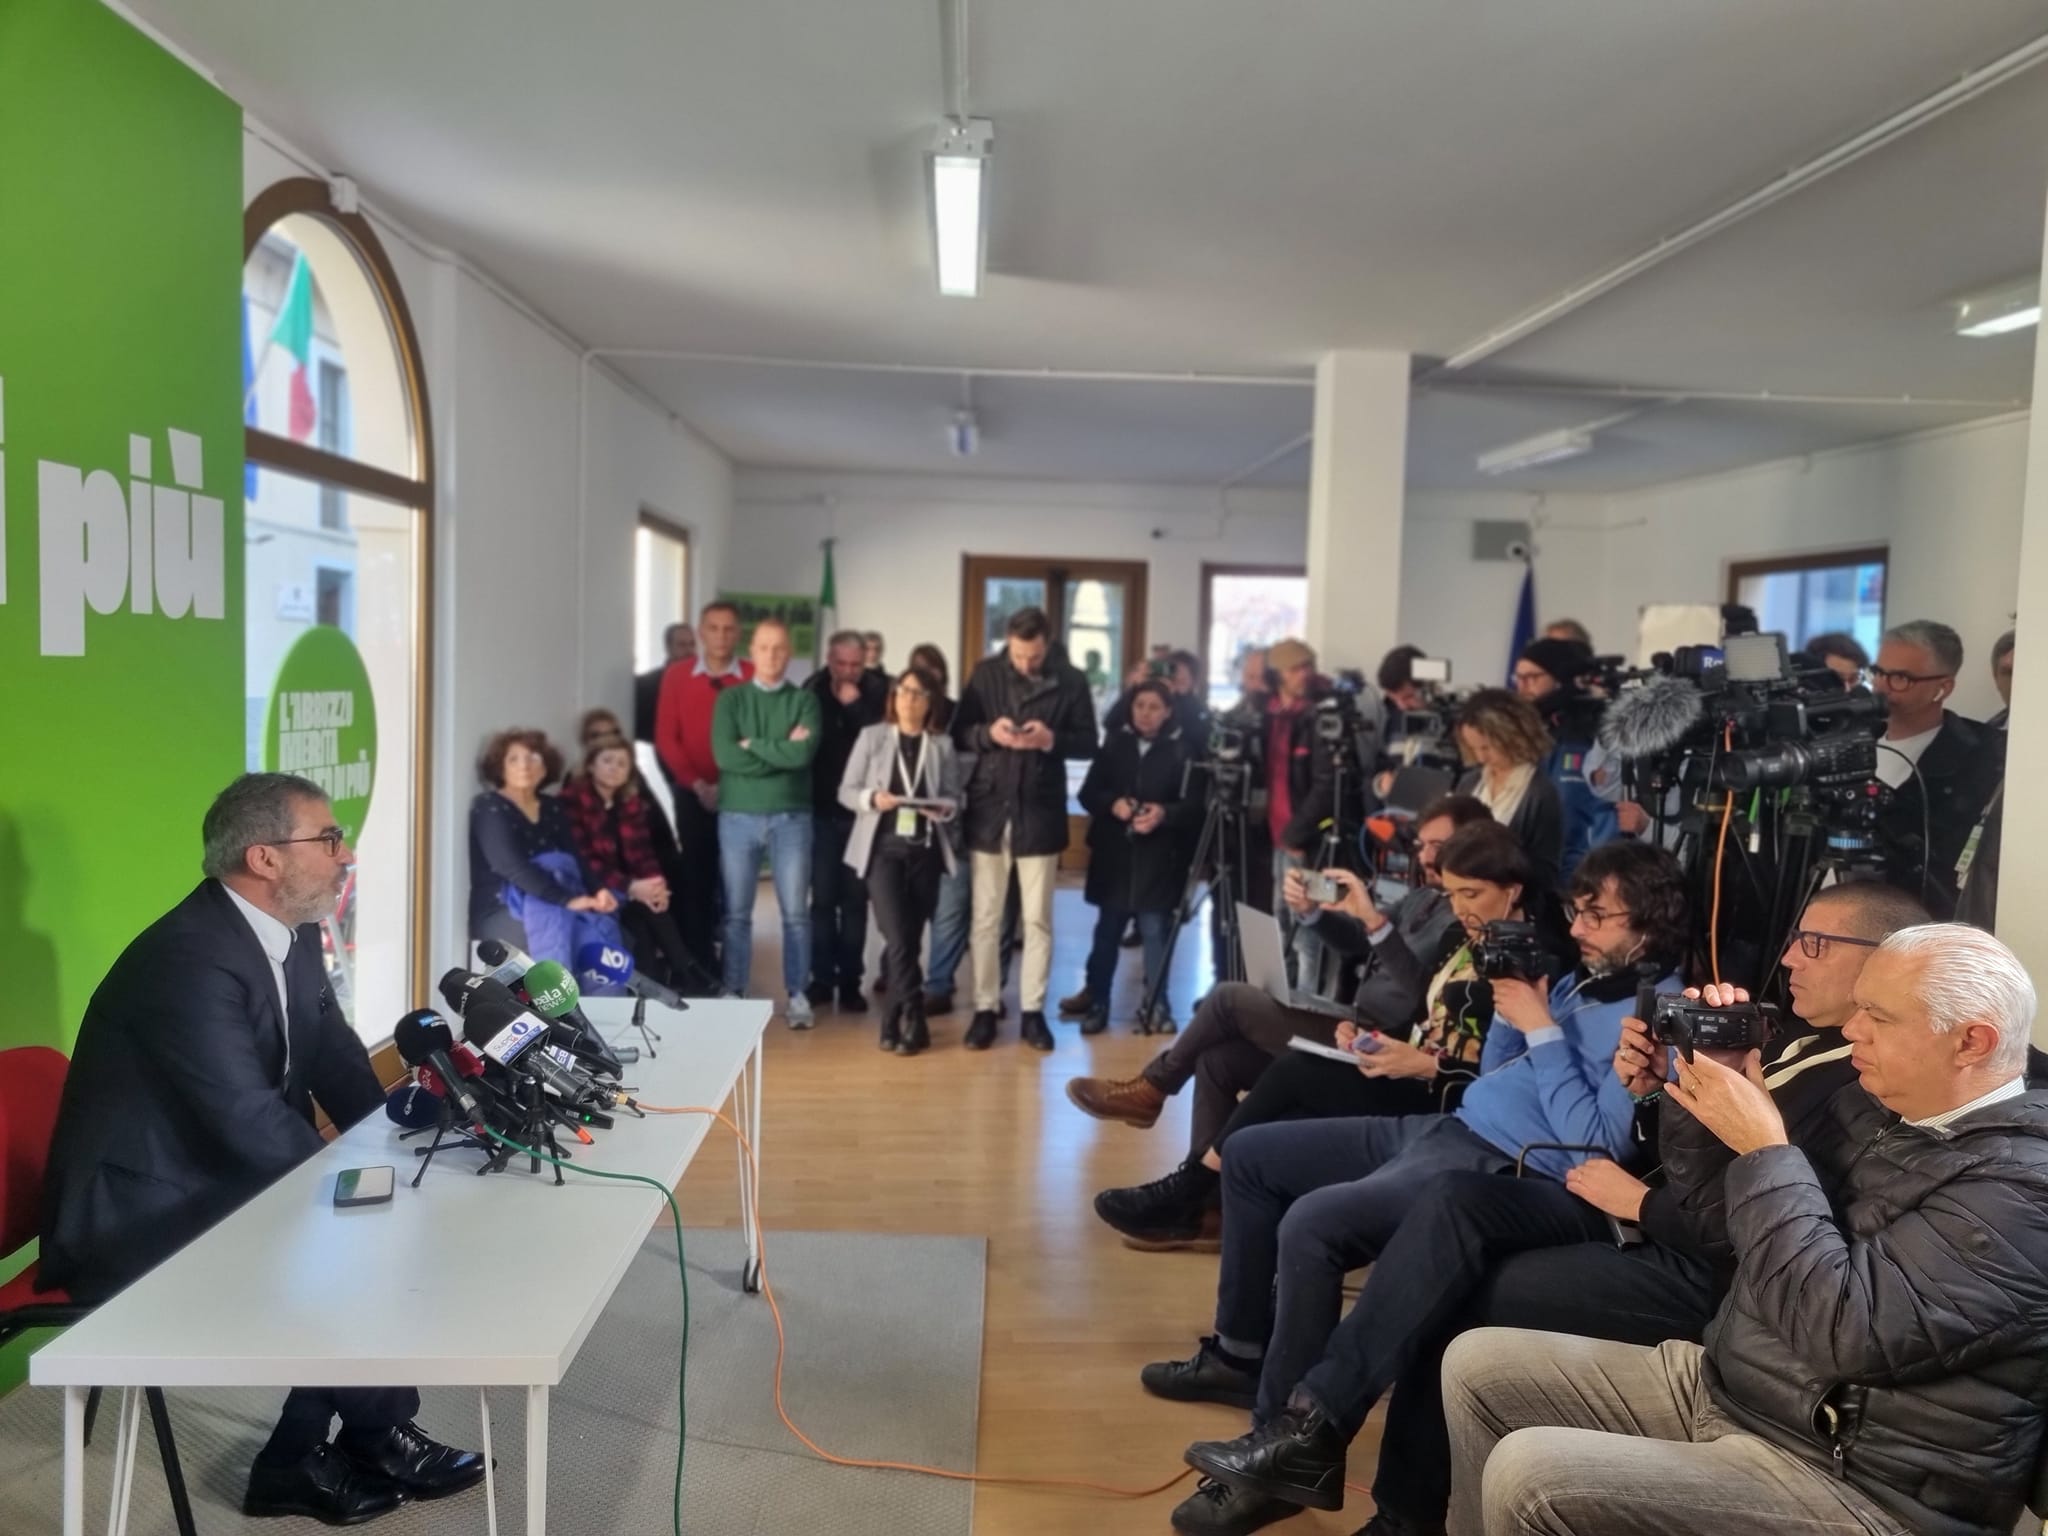 Elezioni regionali Abruzzo, Luciano d'Amico: non siamo riusciti a spiegare bene la bontà del programma, la capacità dei candidati